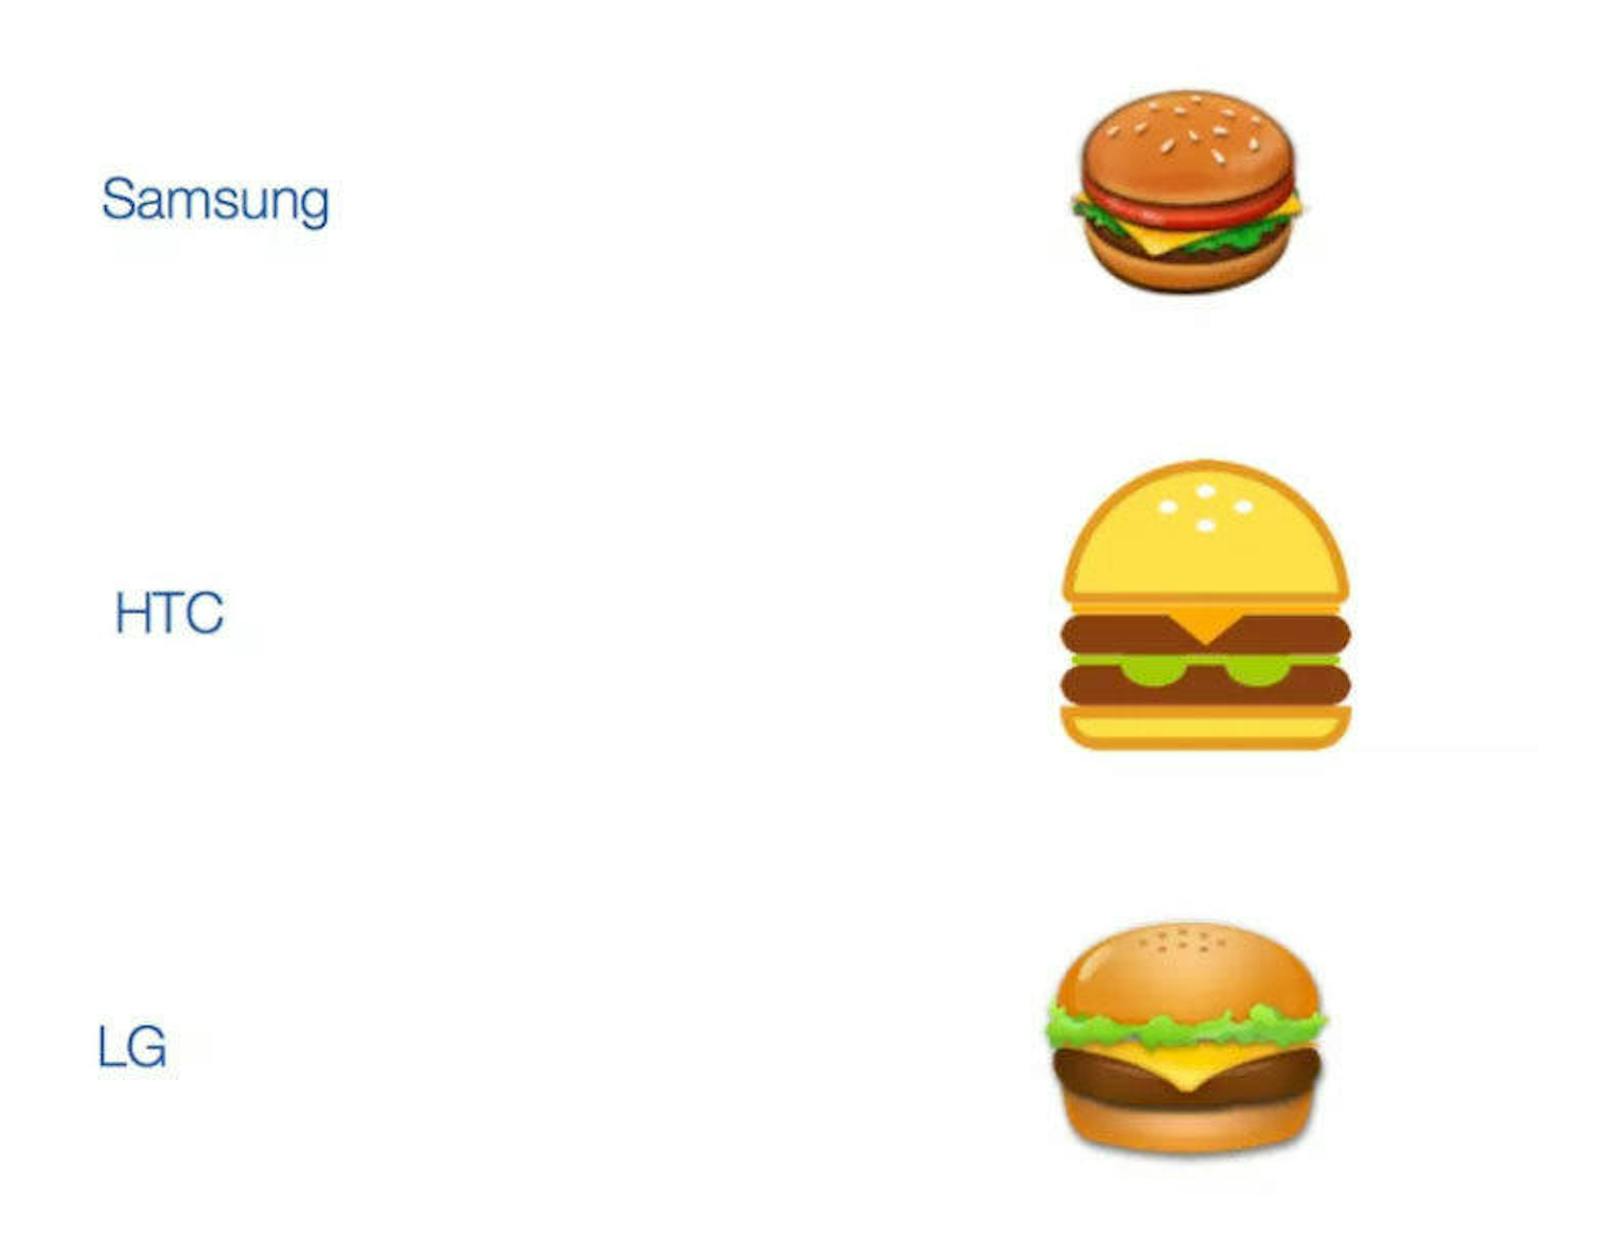 Die Burger-Emojis von Samsung, HTC und LG